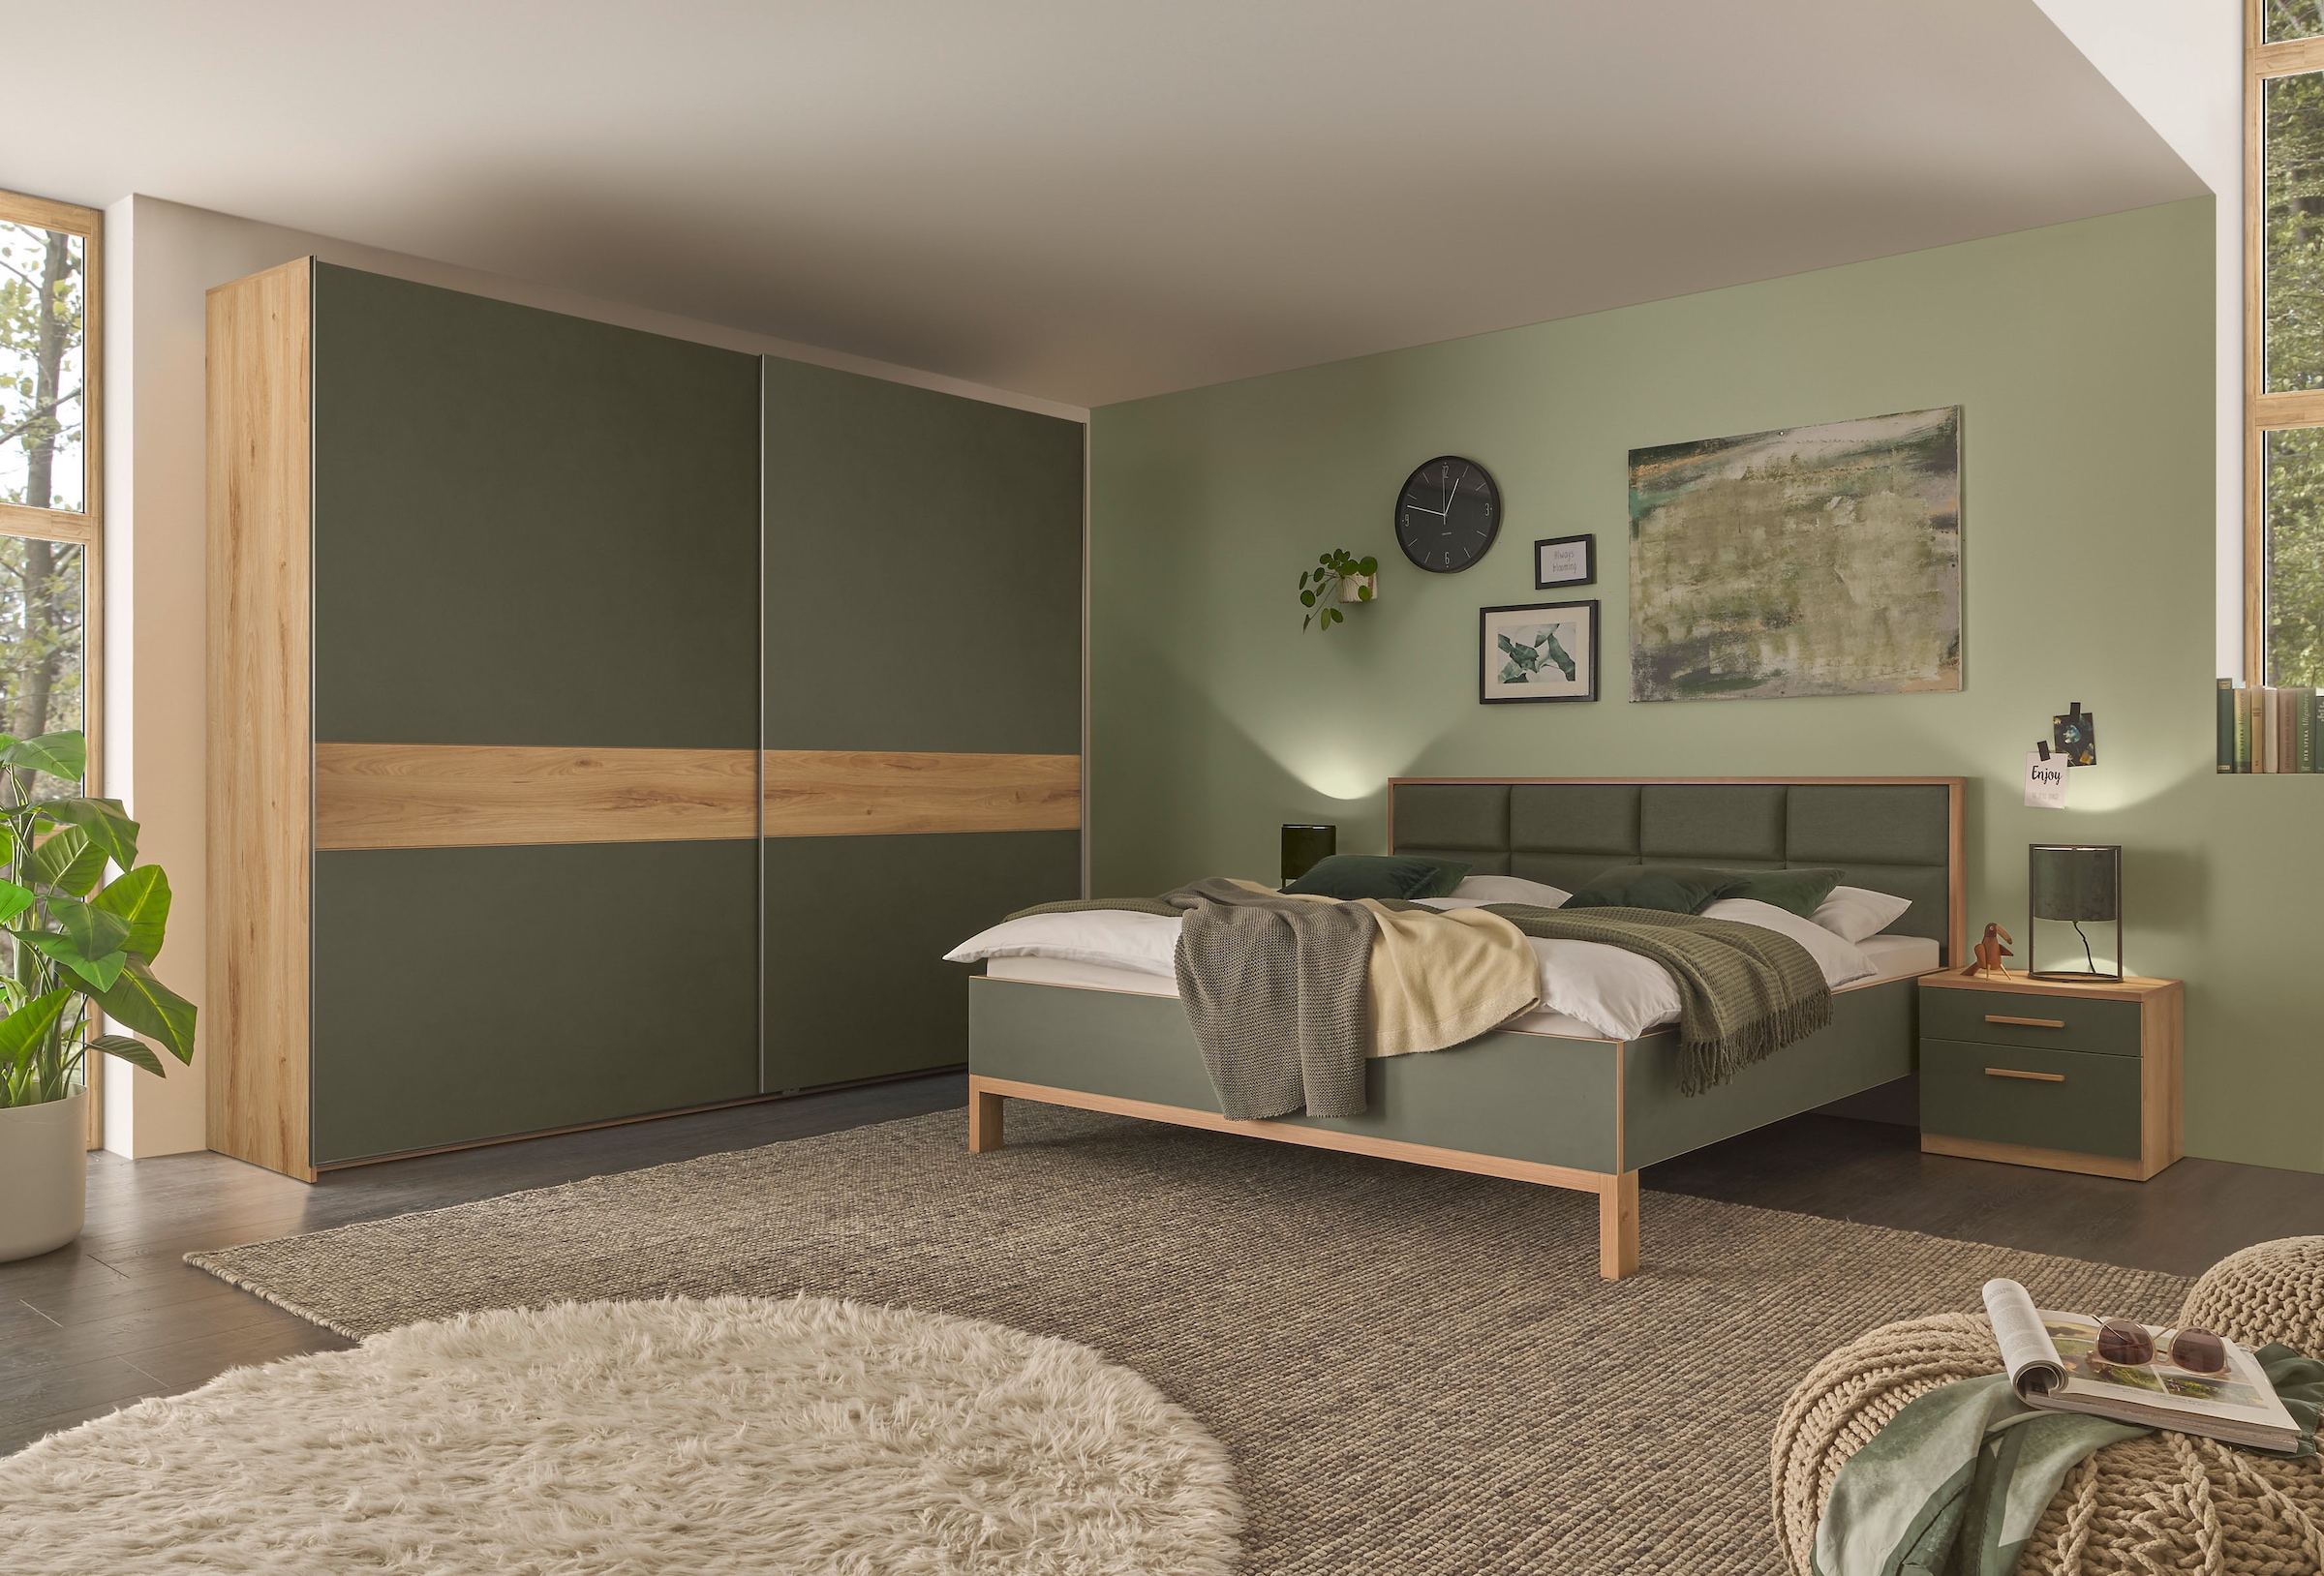 Schlafkontor Bett »Romano«, 180x200 cm, Doppelbett in Dunkelgrün